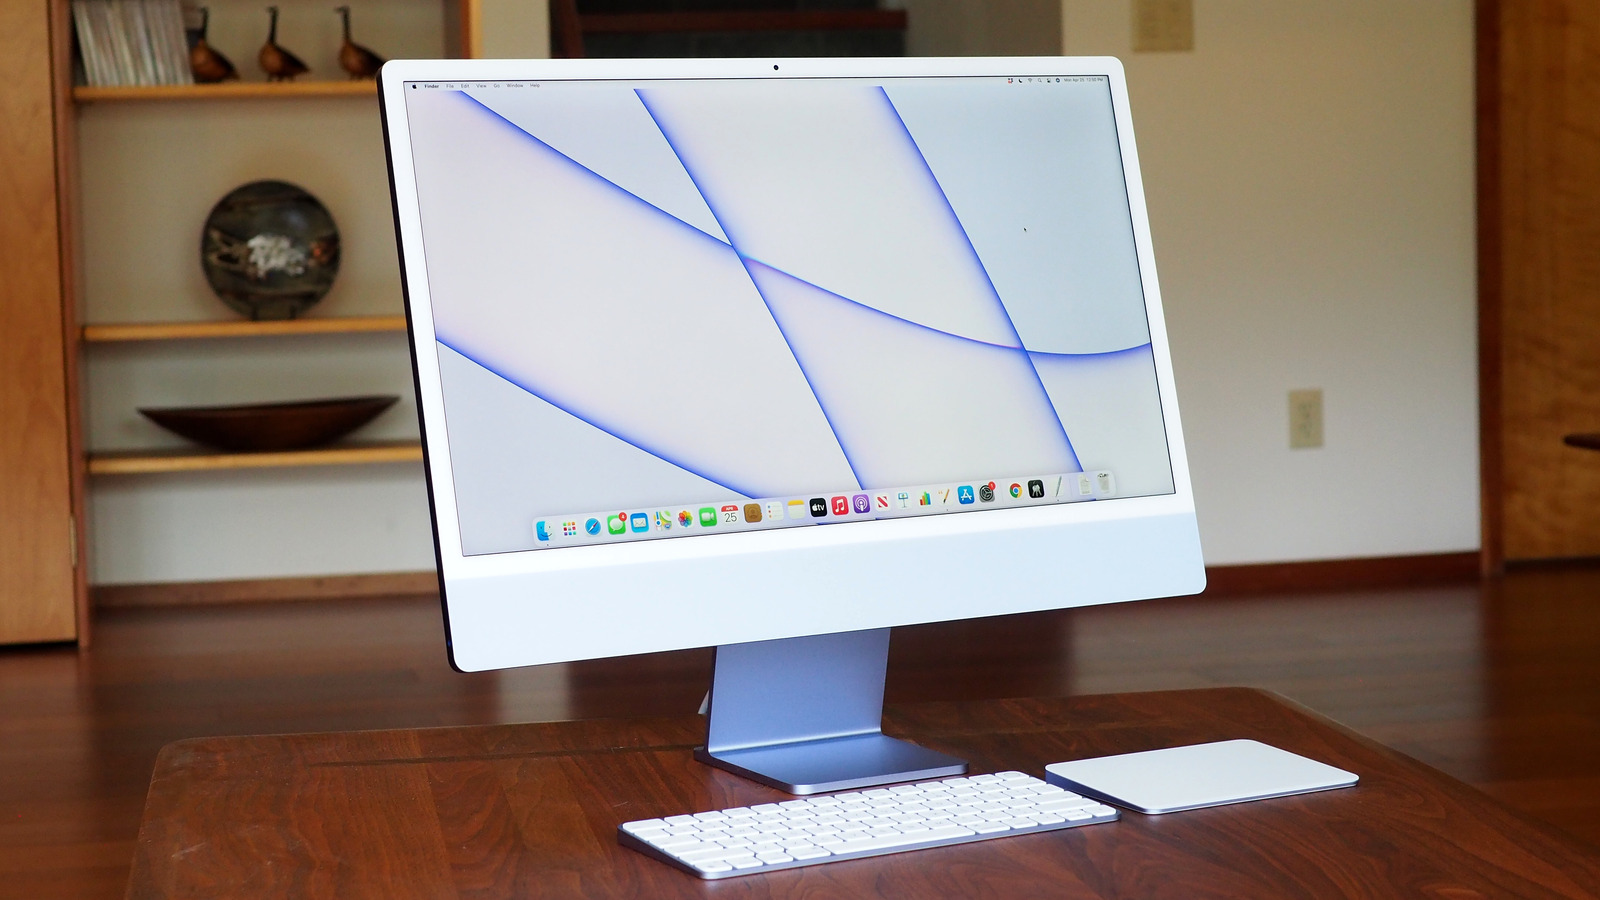 iMac 5K : ceci est une résolution